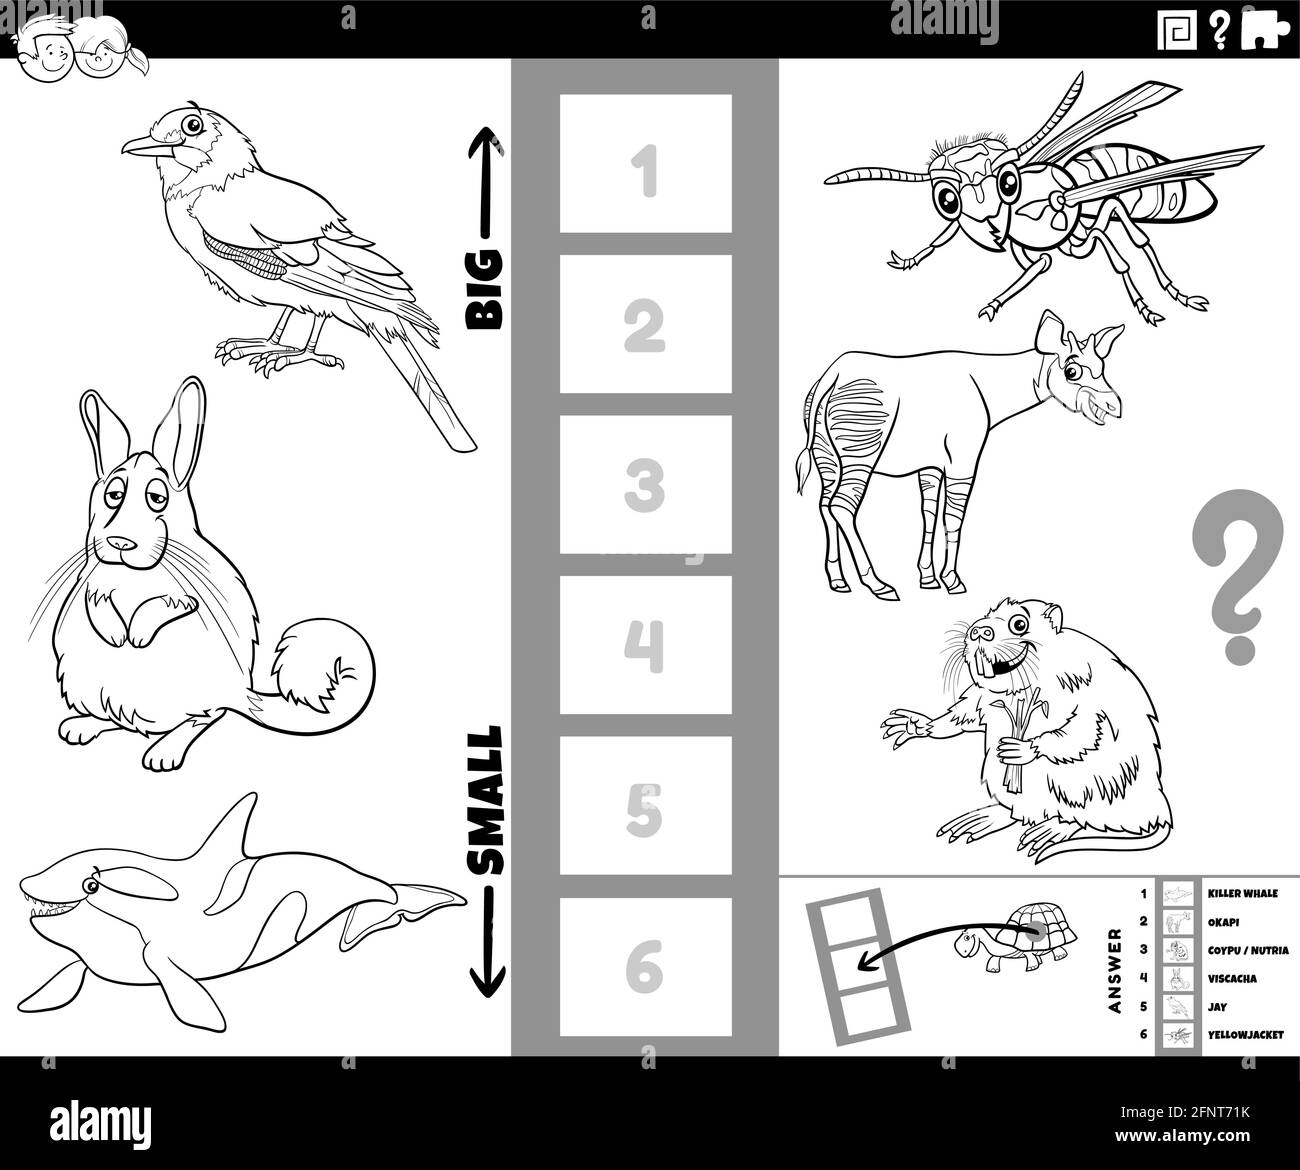 Cartoni animati in bianco e nero illustrazione del gioco educativo di scoperta la più grande e la più piccola specie animale con personaggi comici colorina per bambini Illustrazione Vettoriale